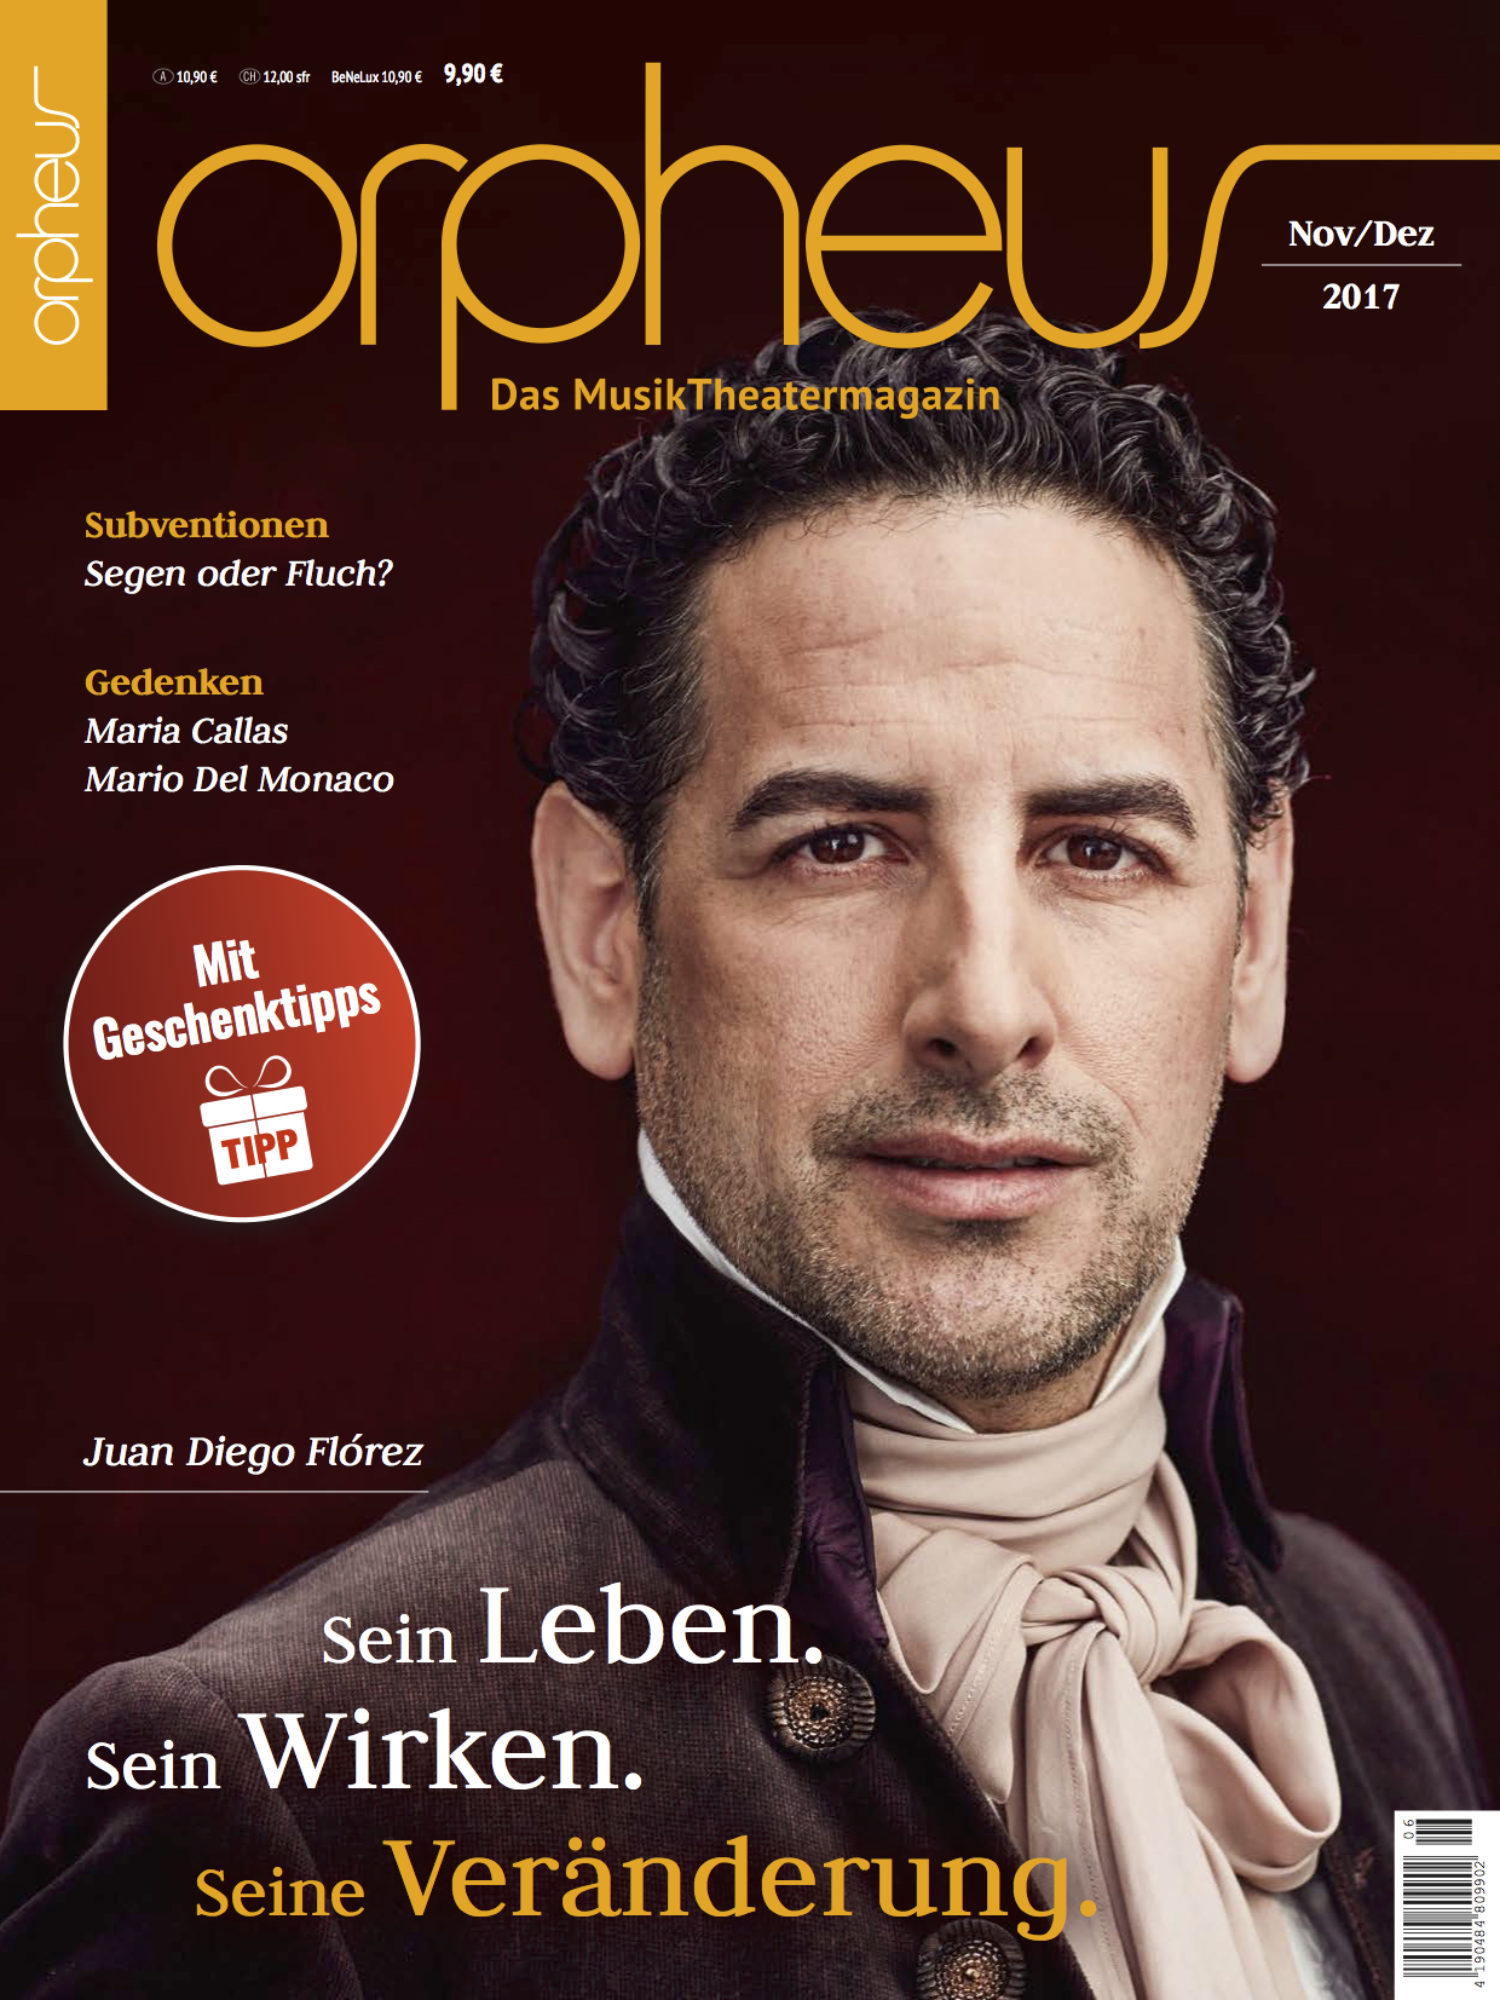 Orpheus Magazine